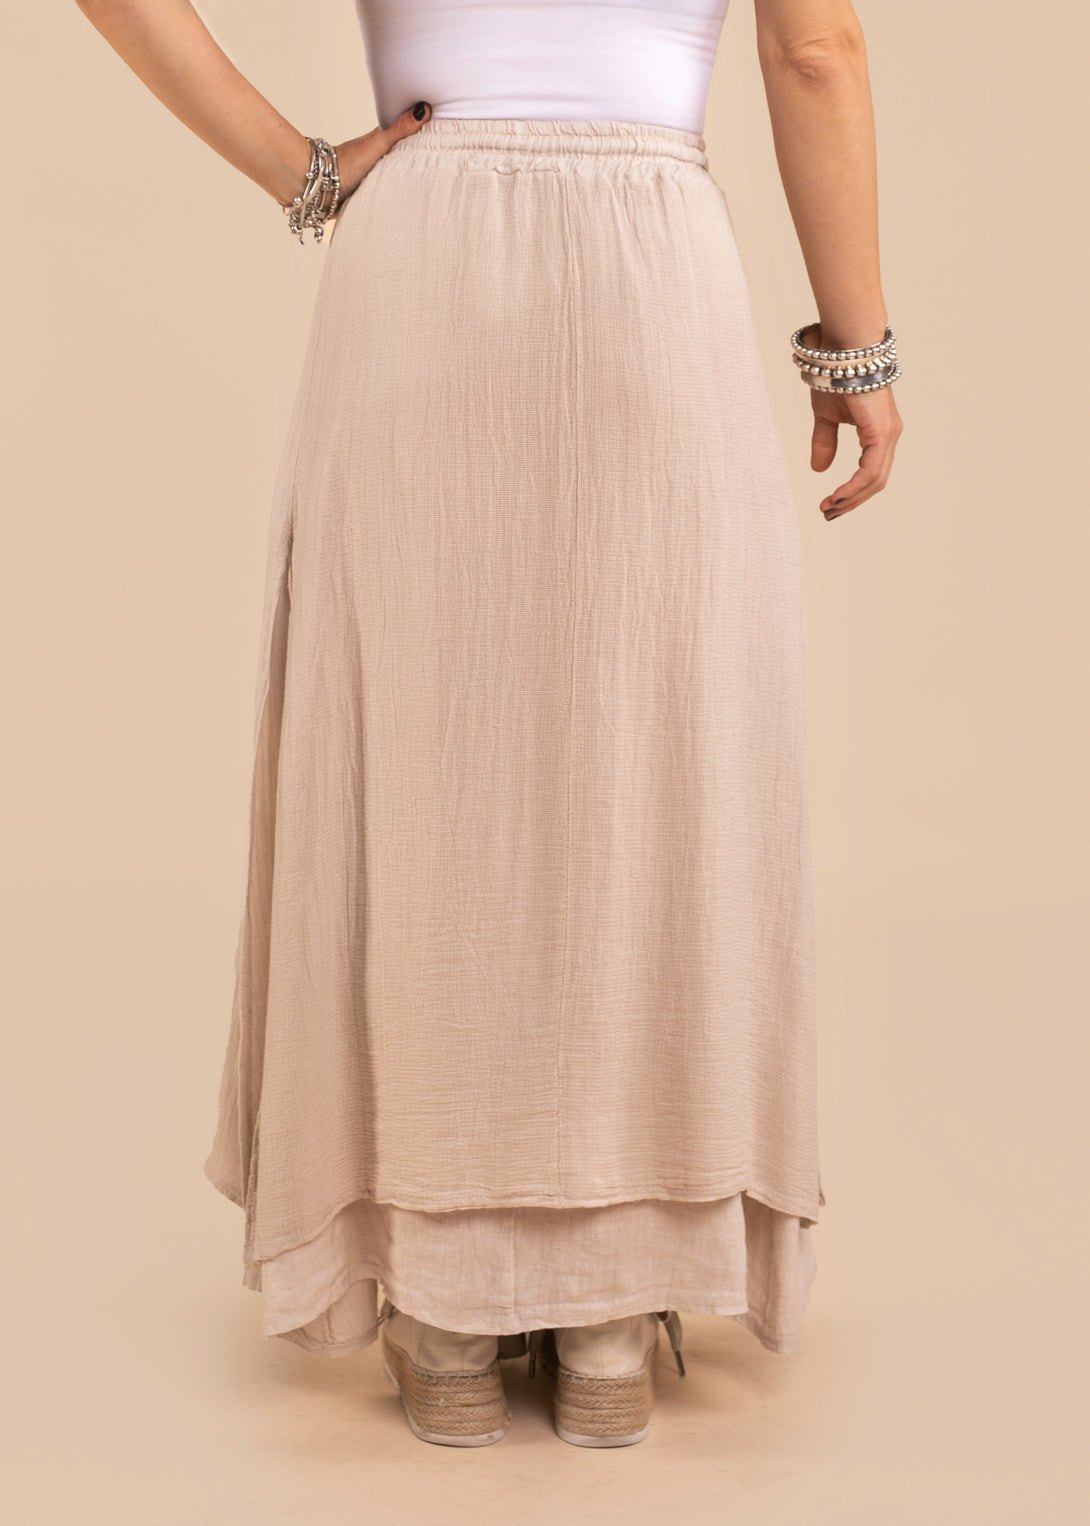 Livy Linen Blend Skirt in Latte - Imagine Fashion